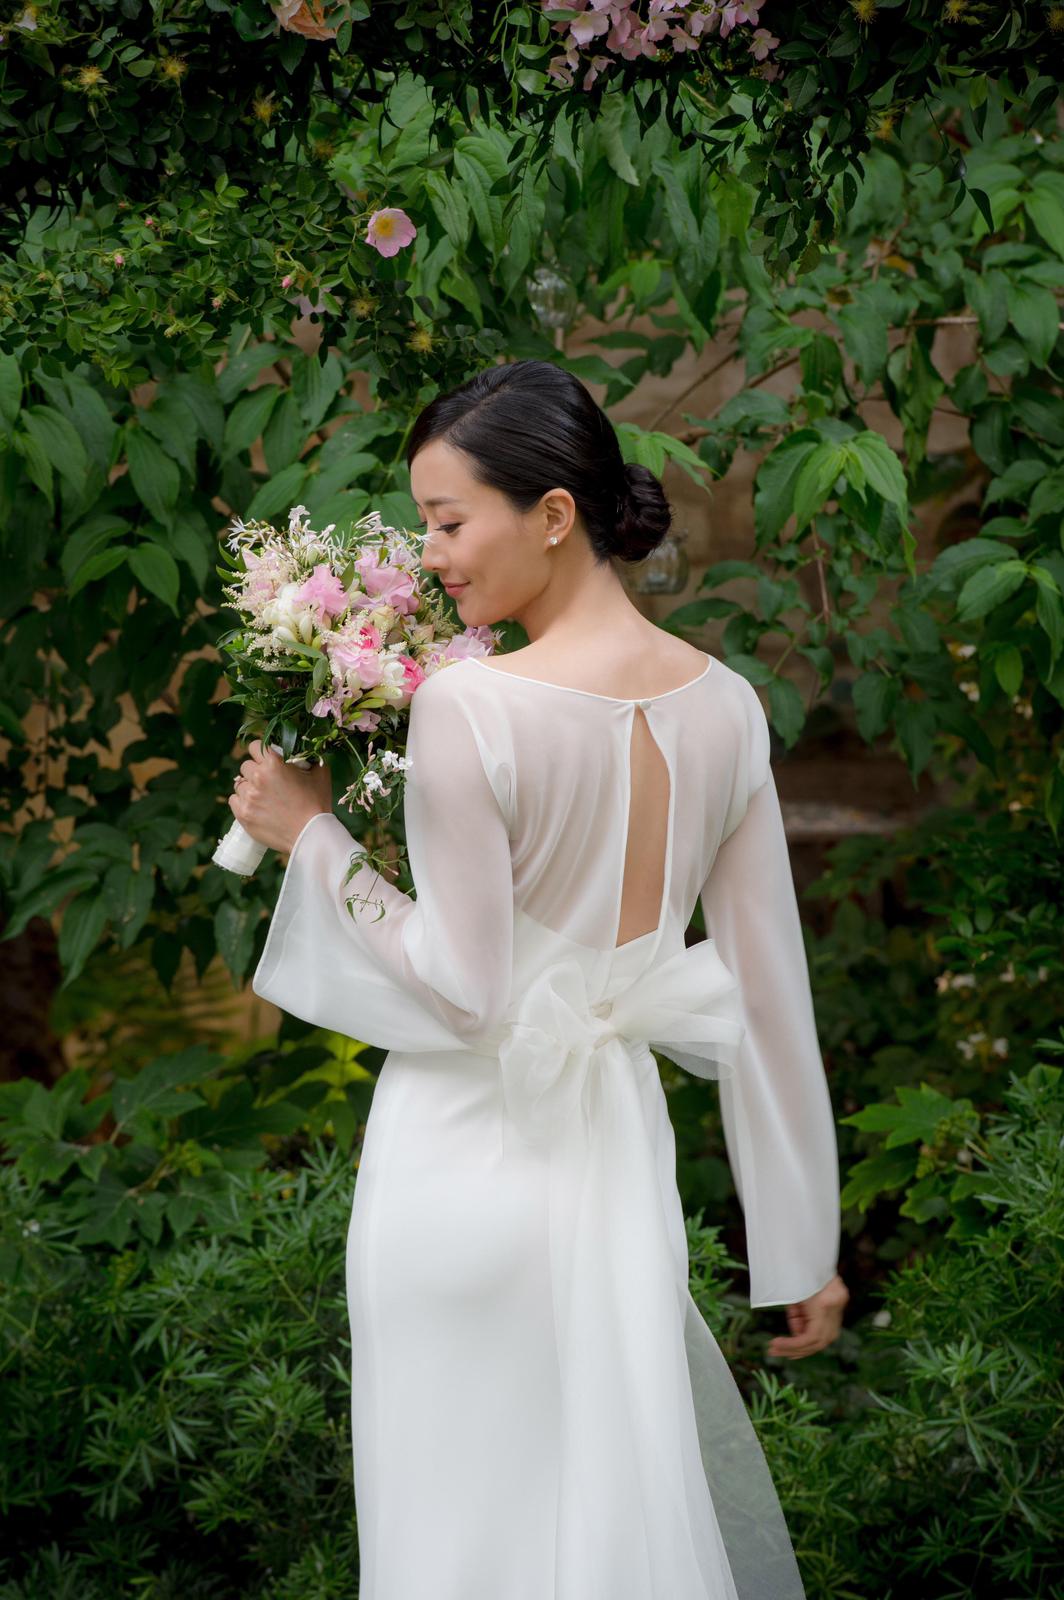 陈法拉身穿米兰设计师为她量身订造的白色简约典雅婚纱。